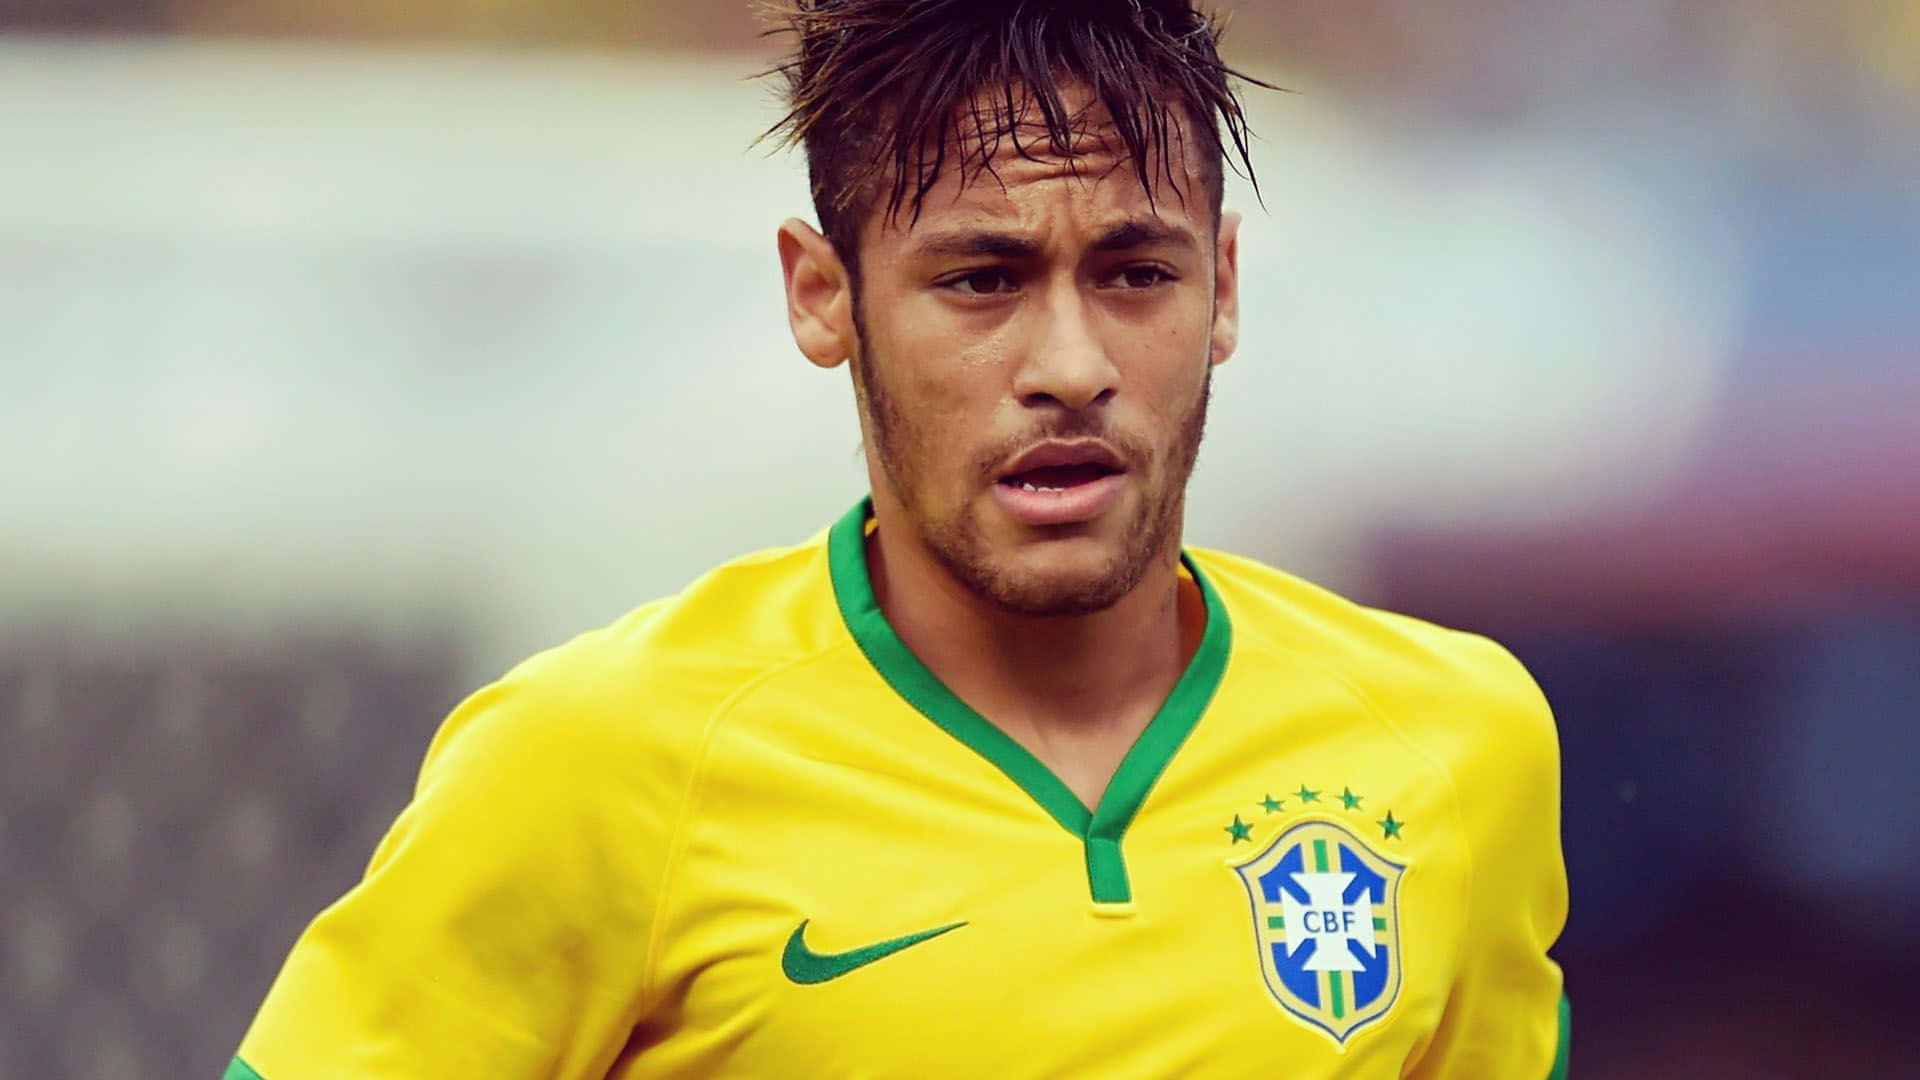 Bildeines Professionellen Fußballspielers Neymar Auf Dem Feld.